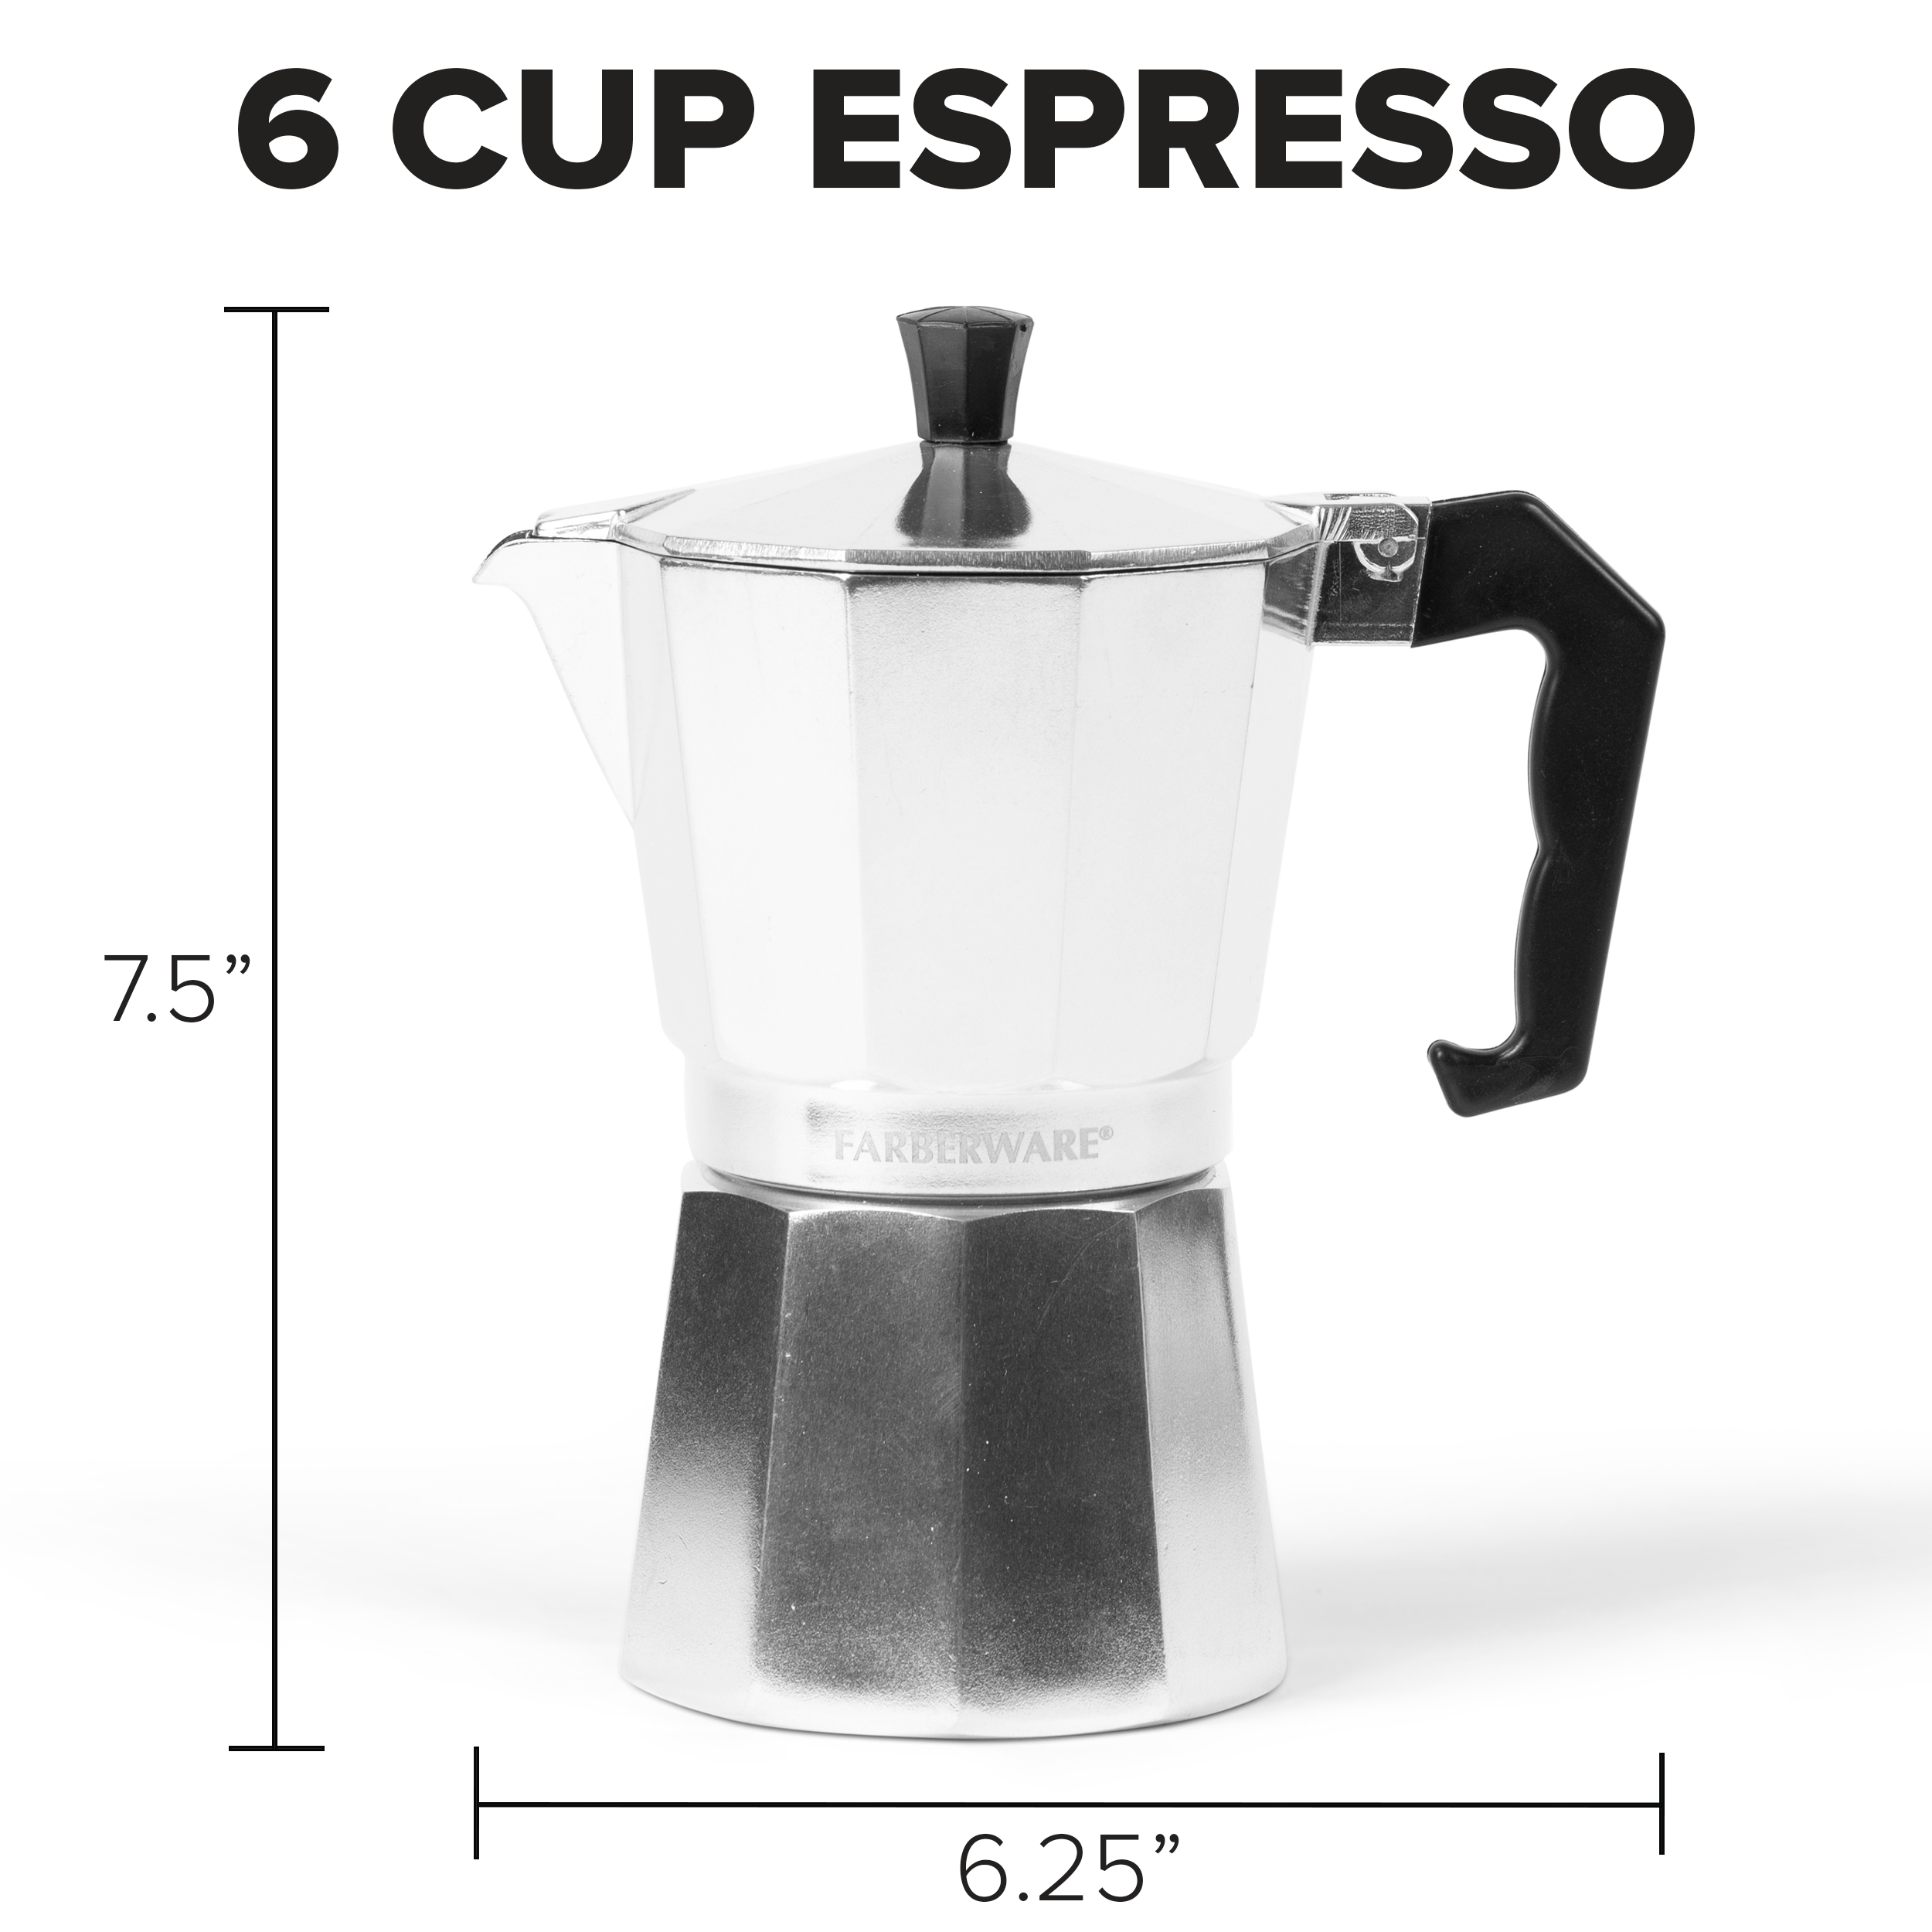 Farberware Silver Espresso & Cappuccino Machines